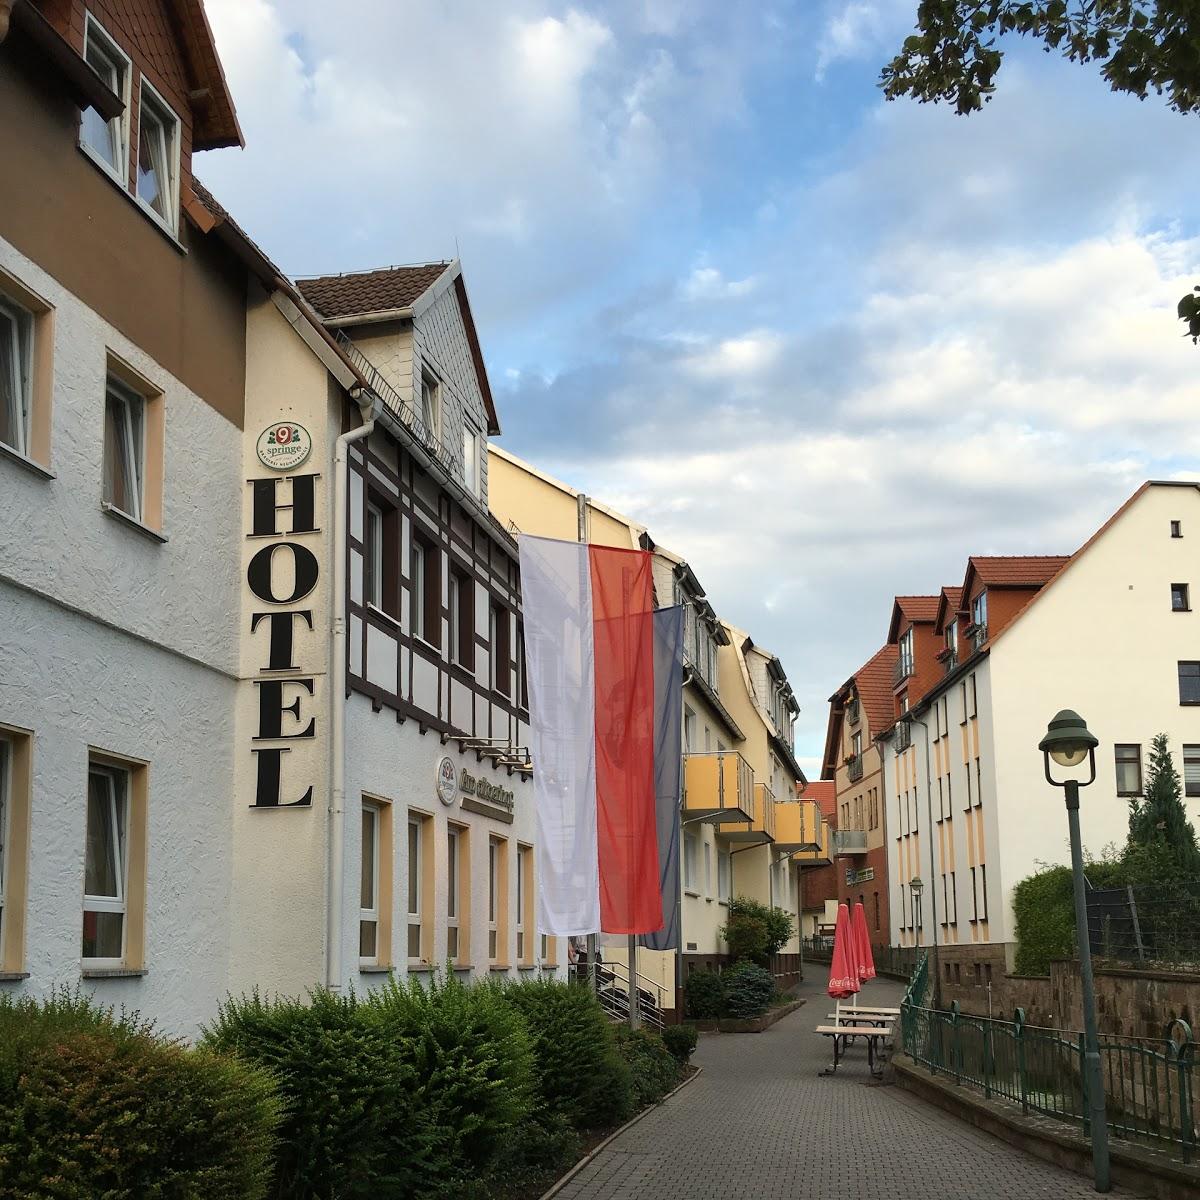 Restaurant "Hotel und Restaurant  Am Jüdenhof " in Heilbad Heiligenstadt